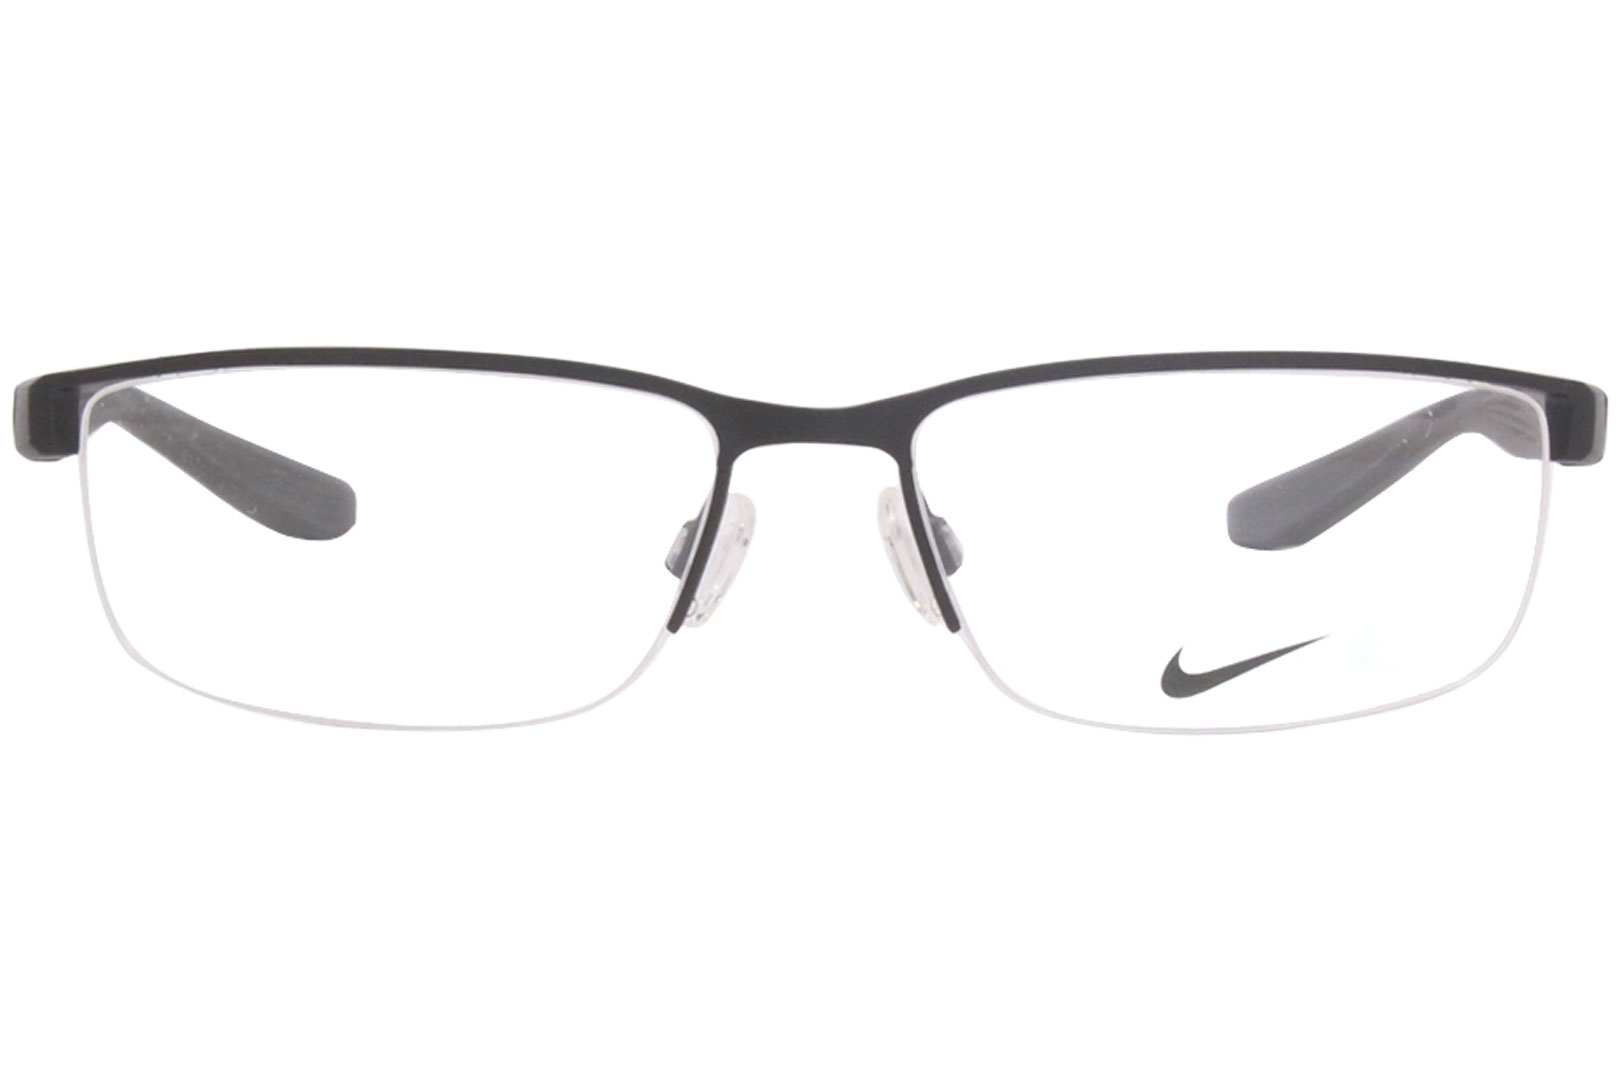 Nike Eyeglasses Frame Mens 8172 001 Black 56 16 140